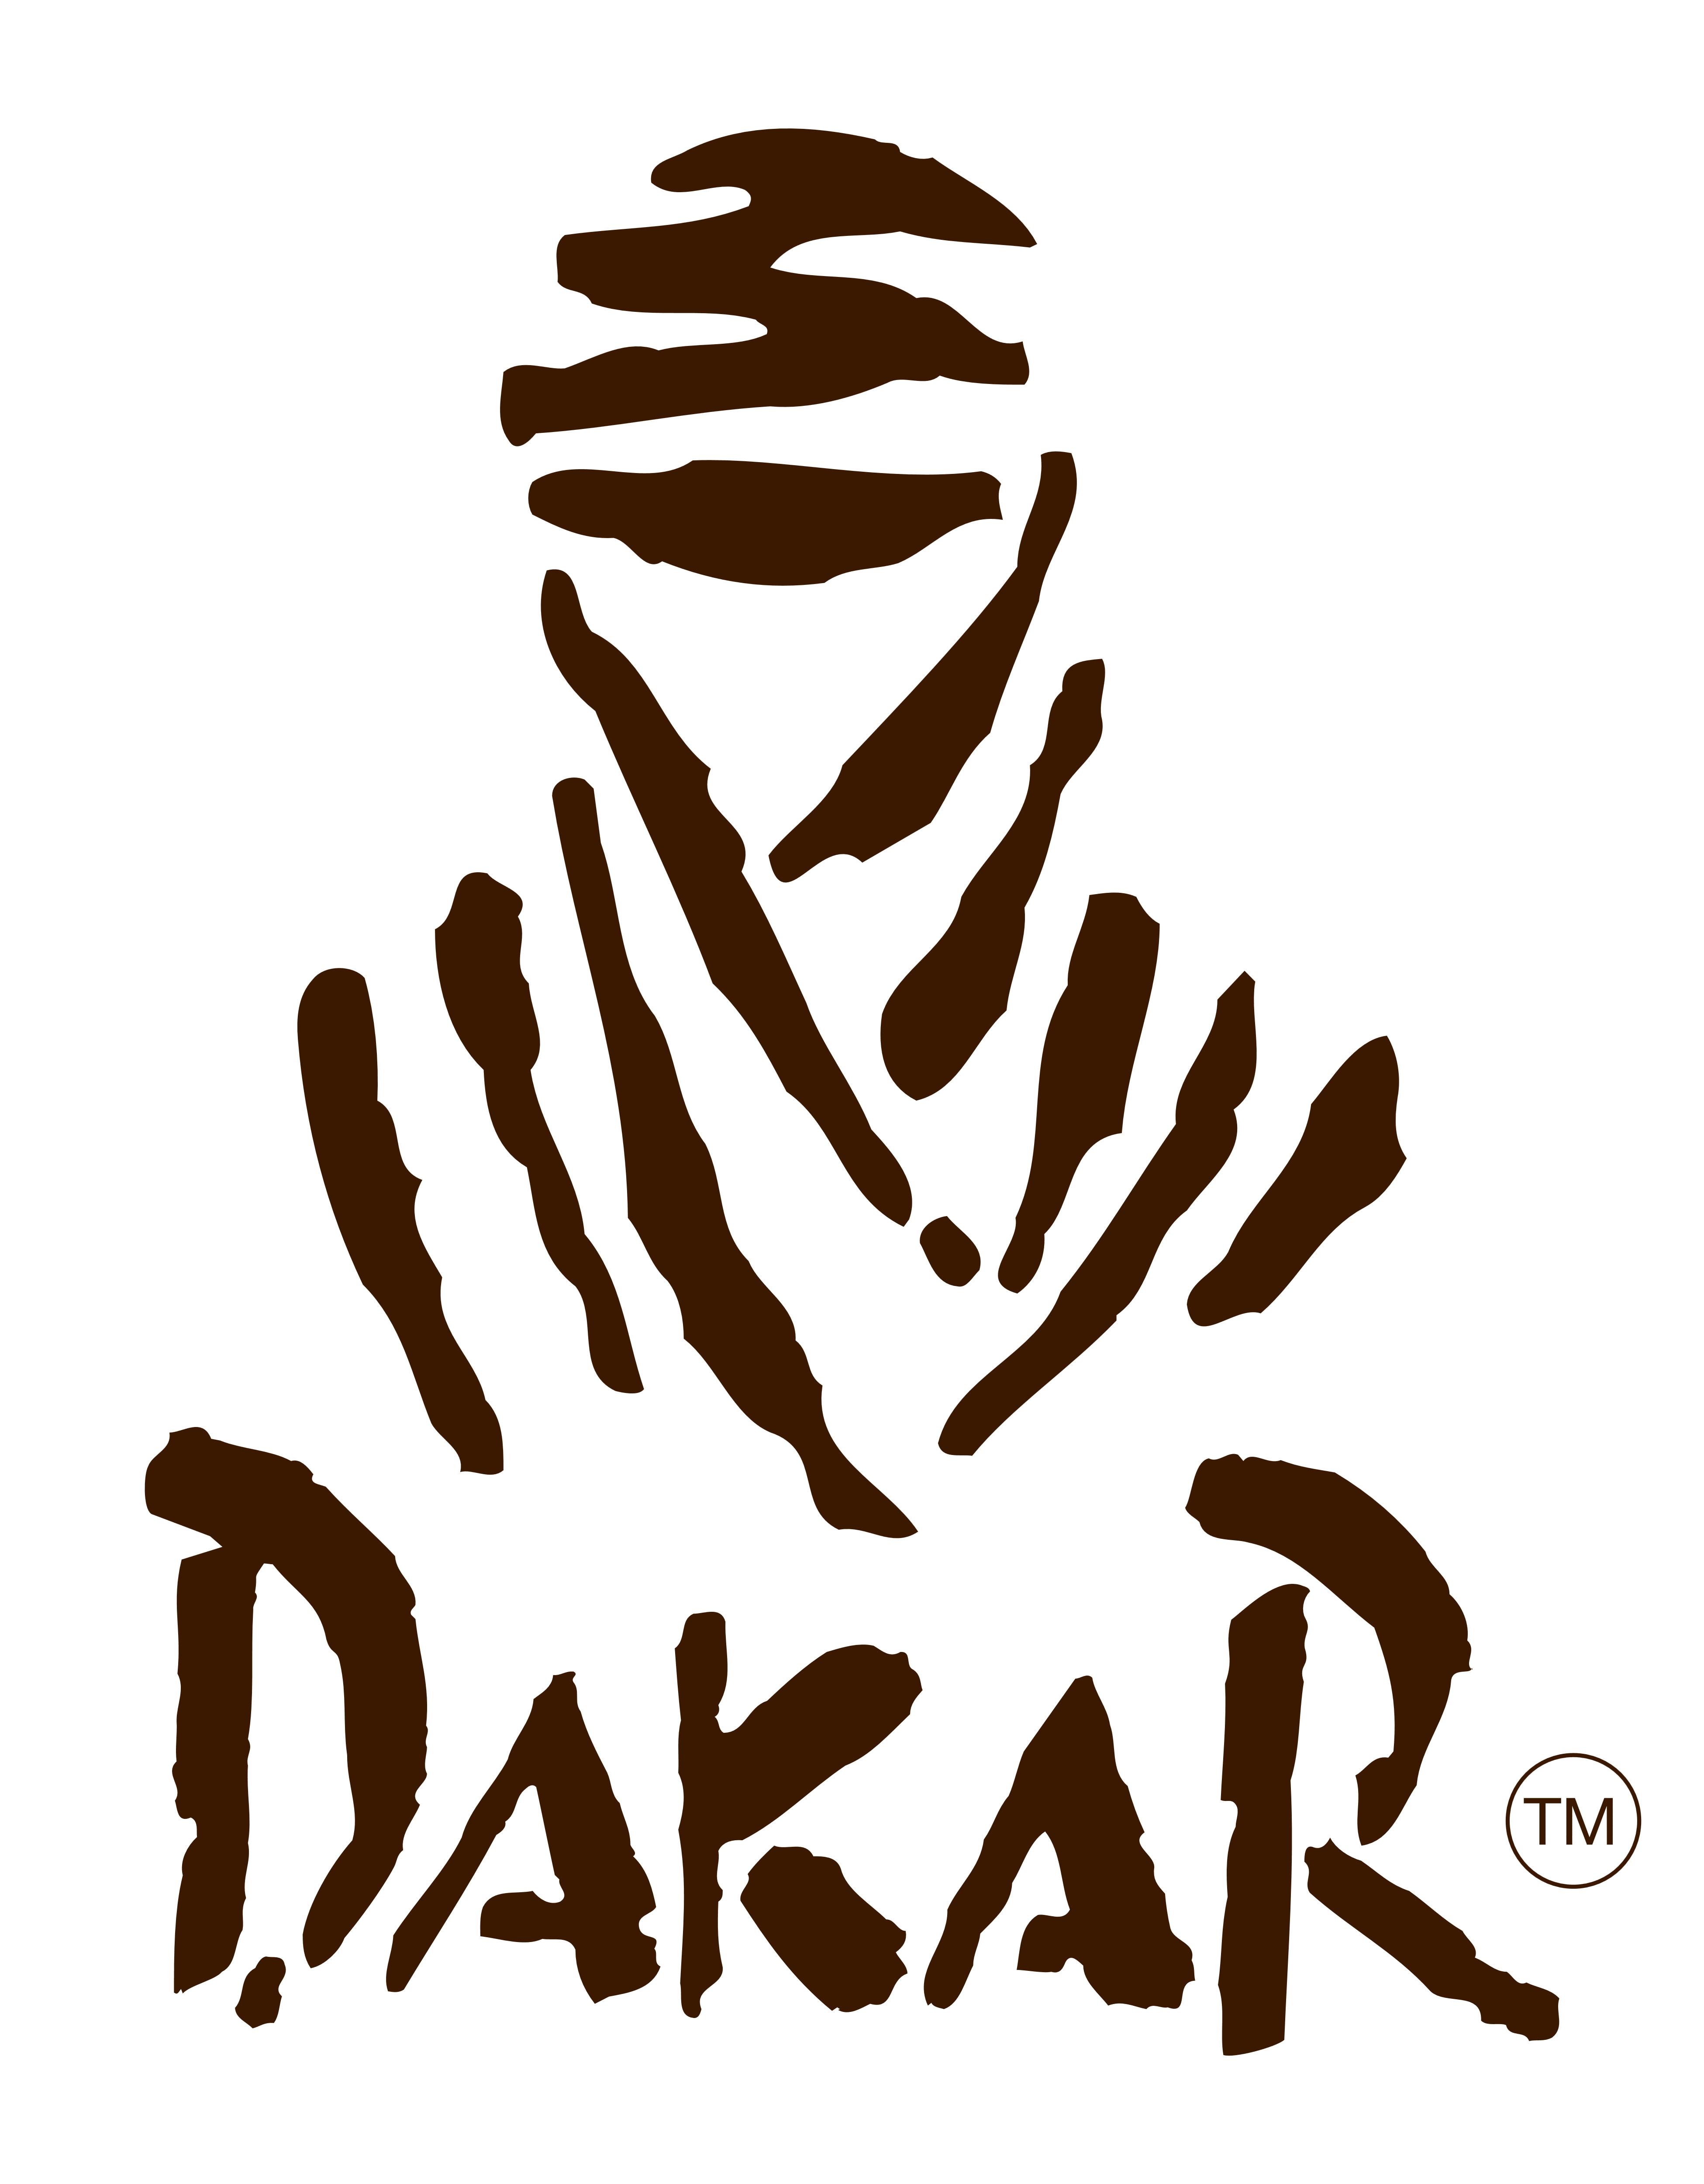 Details 48 que es el logo del dakar